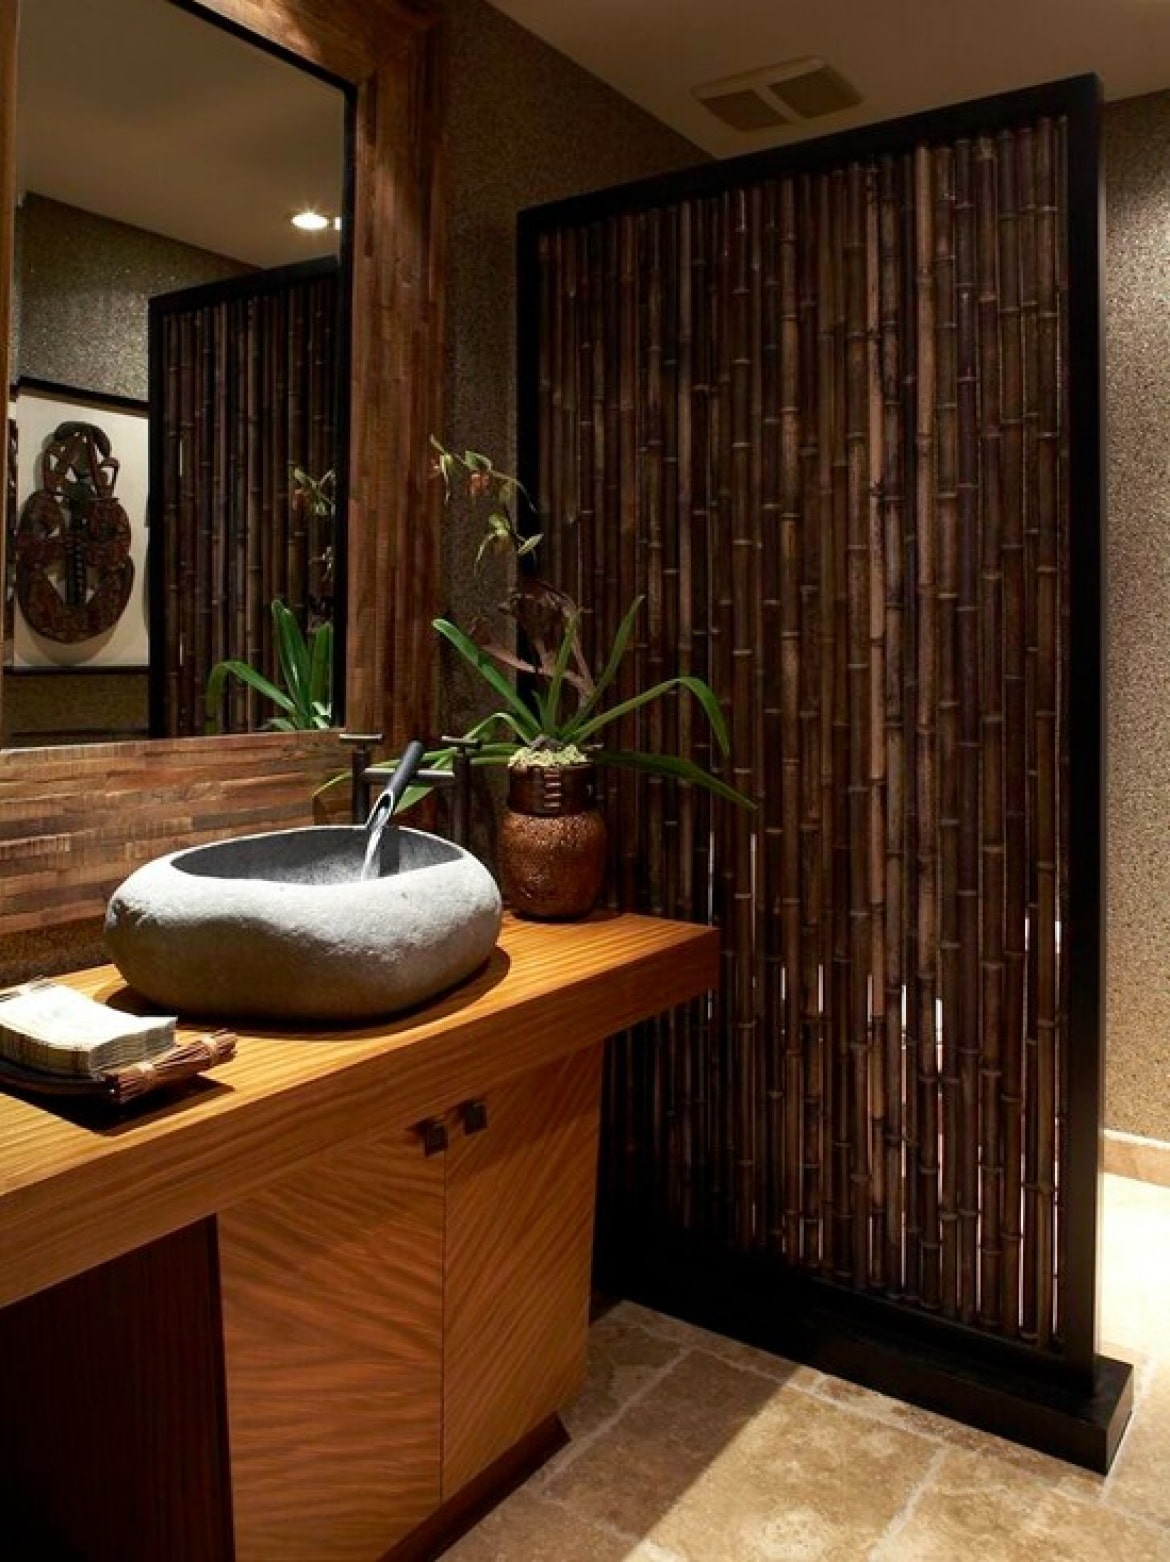 Стебли бамбука в вазе в интерьере